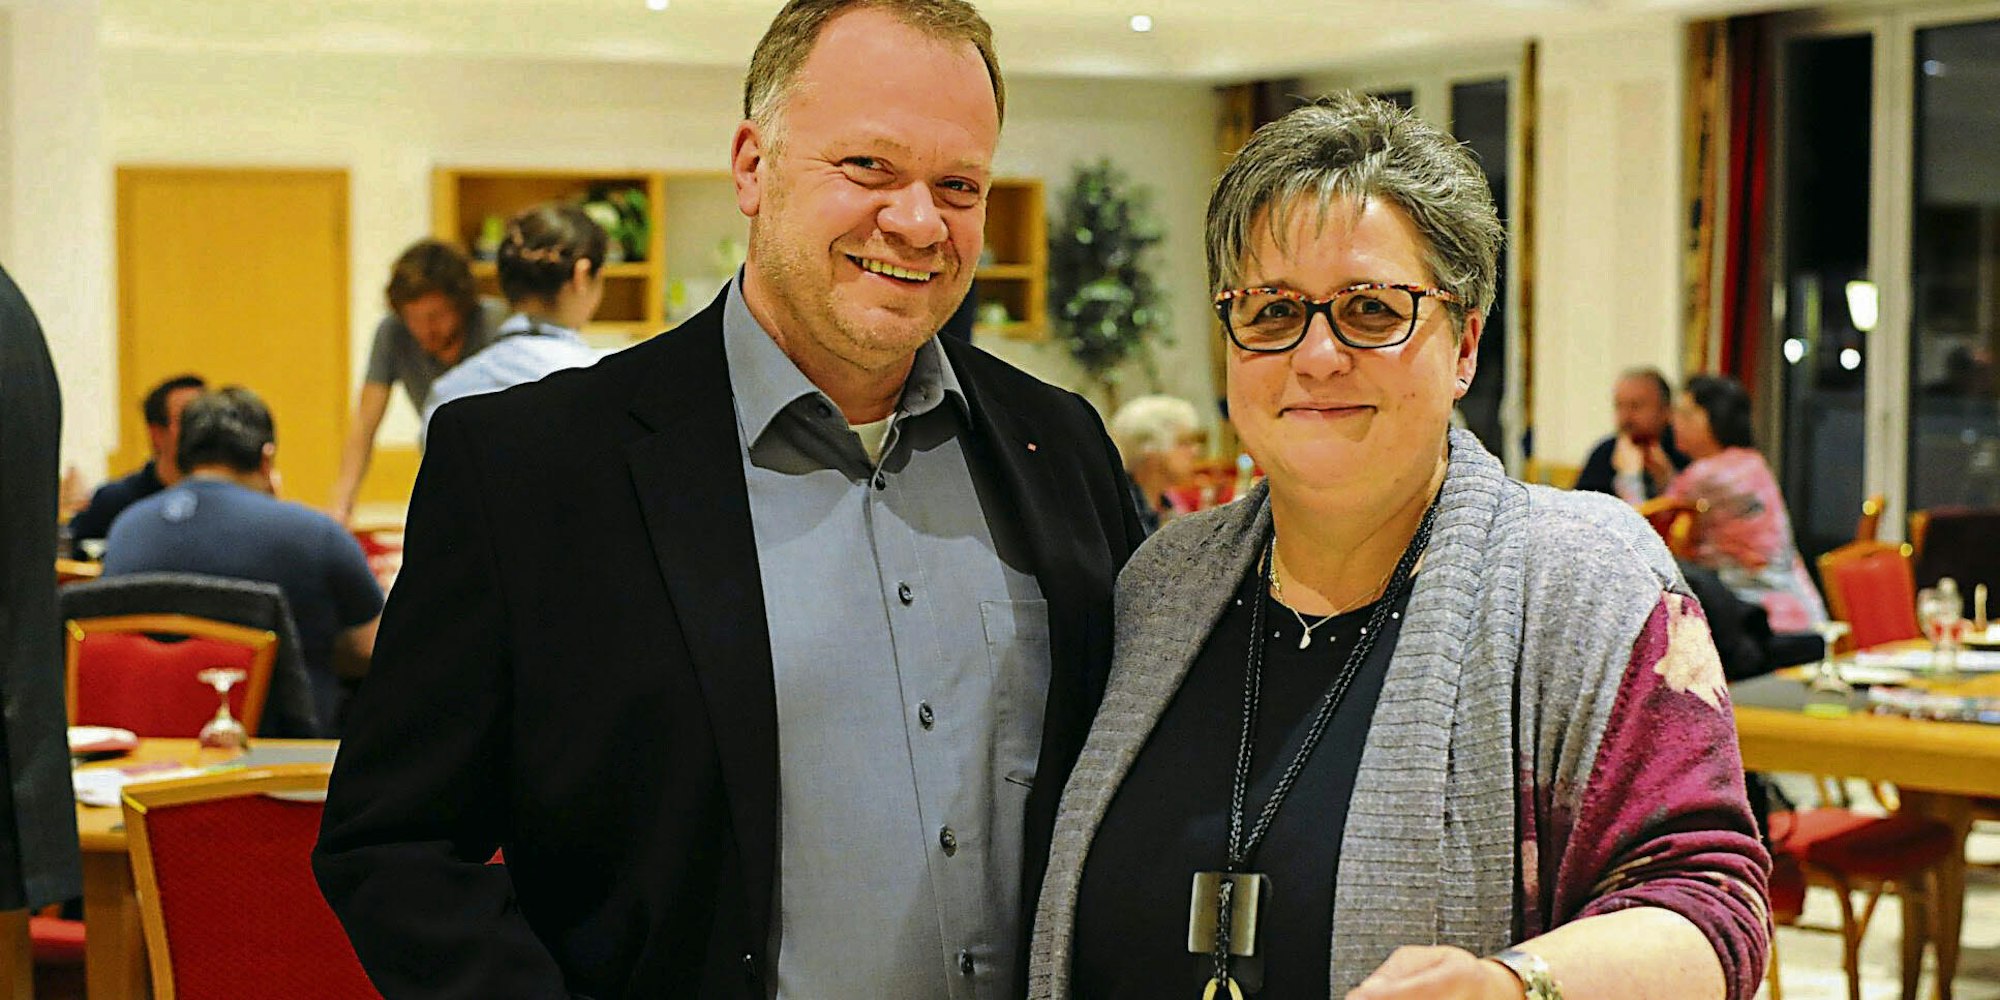 Frisch gewählt wurde Claudia Hagen als neue Vorsitzende. Ihr Stellvertreter ist Ralph Liebig, der als Bürgermeisterkandidat der SPD ebenfalls alle Stimmen auf der Jahreshauptversammlung erhielt.